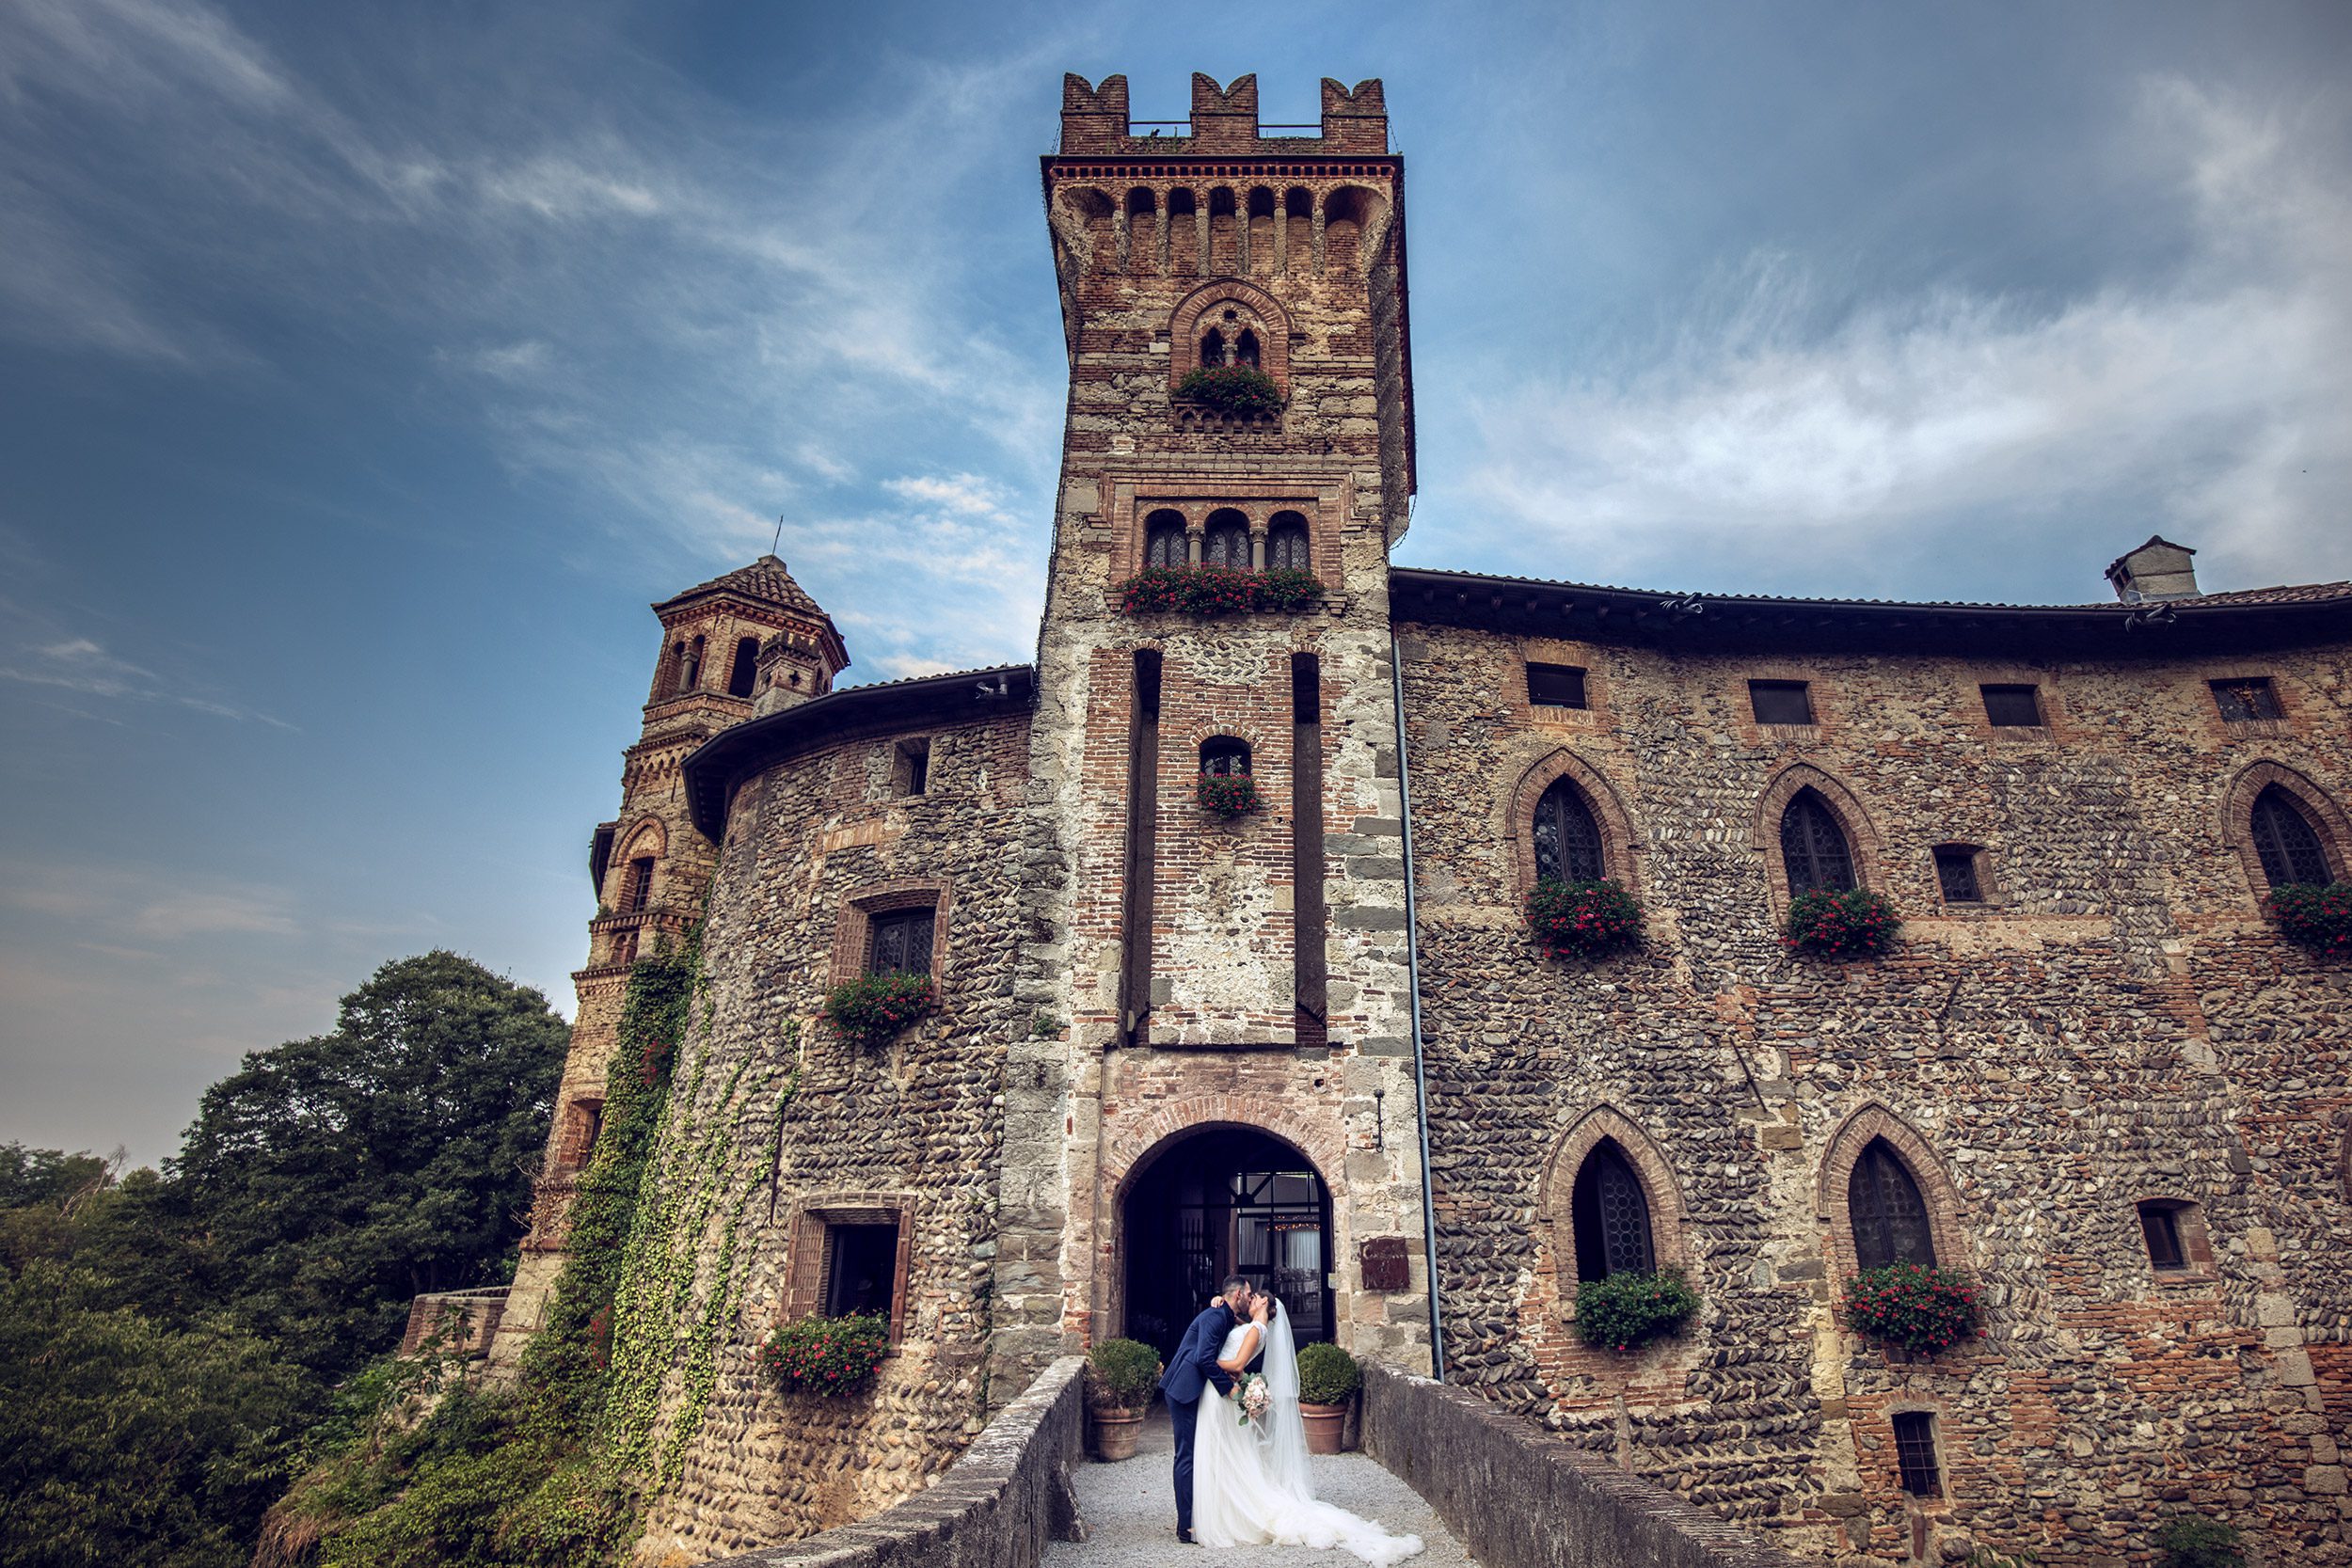 000 reportage wedding sposi foto matrimonio castello di marne bergamo